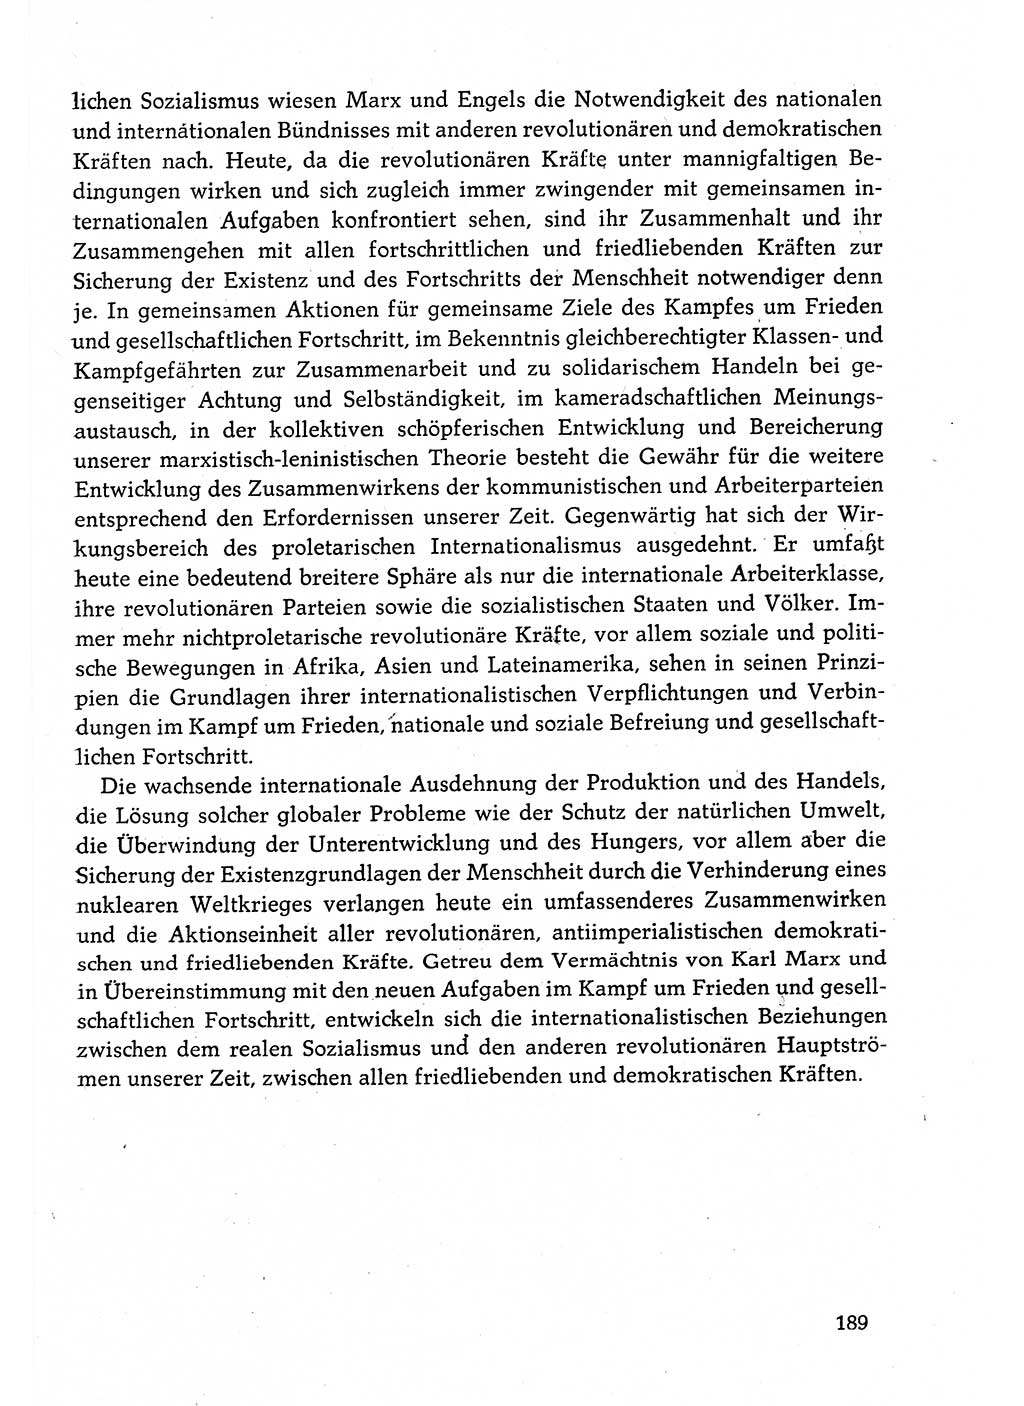 Dokumente der Sozialistischen Einheitspartei Deutschlands (SED) [Deutsche Demokratische Republik (DDR)] 1982-1983, Seite 189 (Dok. SED DDR 1982-1983, S. 189)